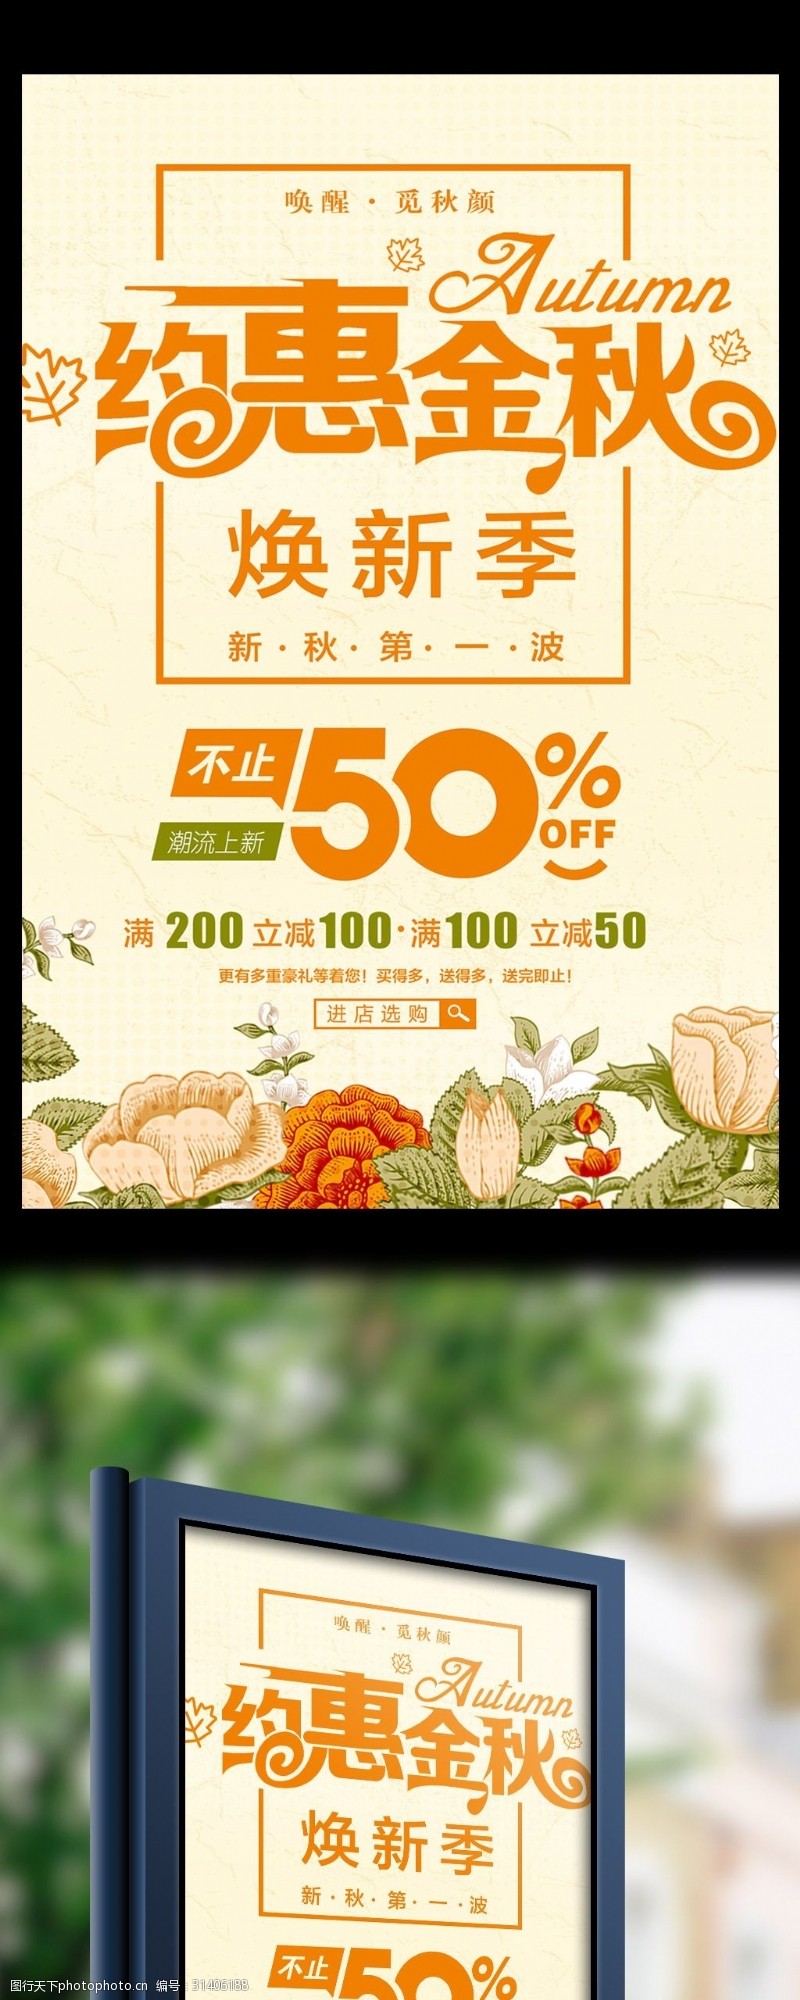 新品上市宣传秋季上新促销花朵创意简约商业海报设计